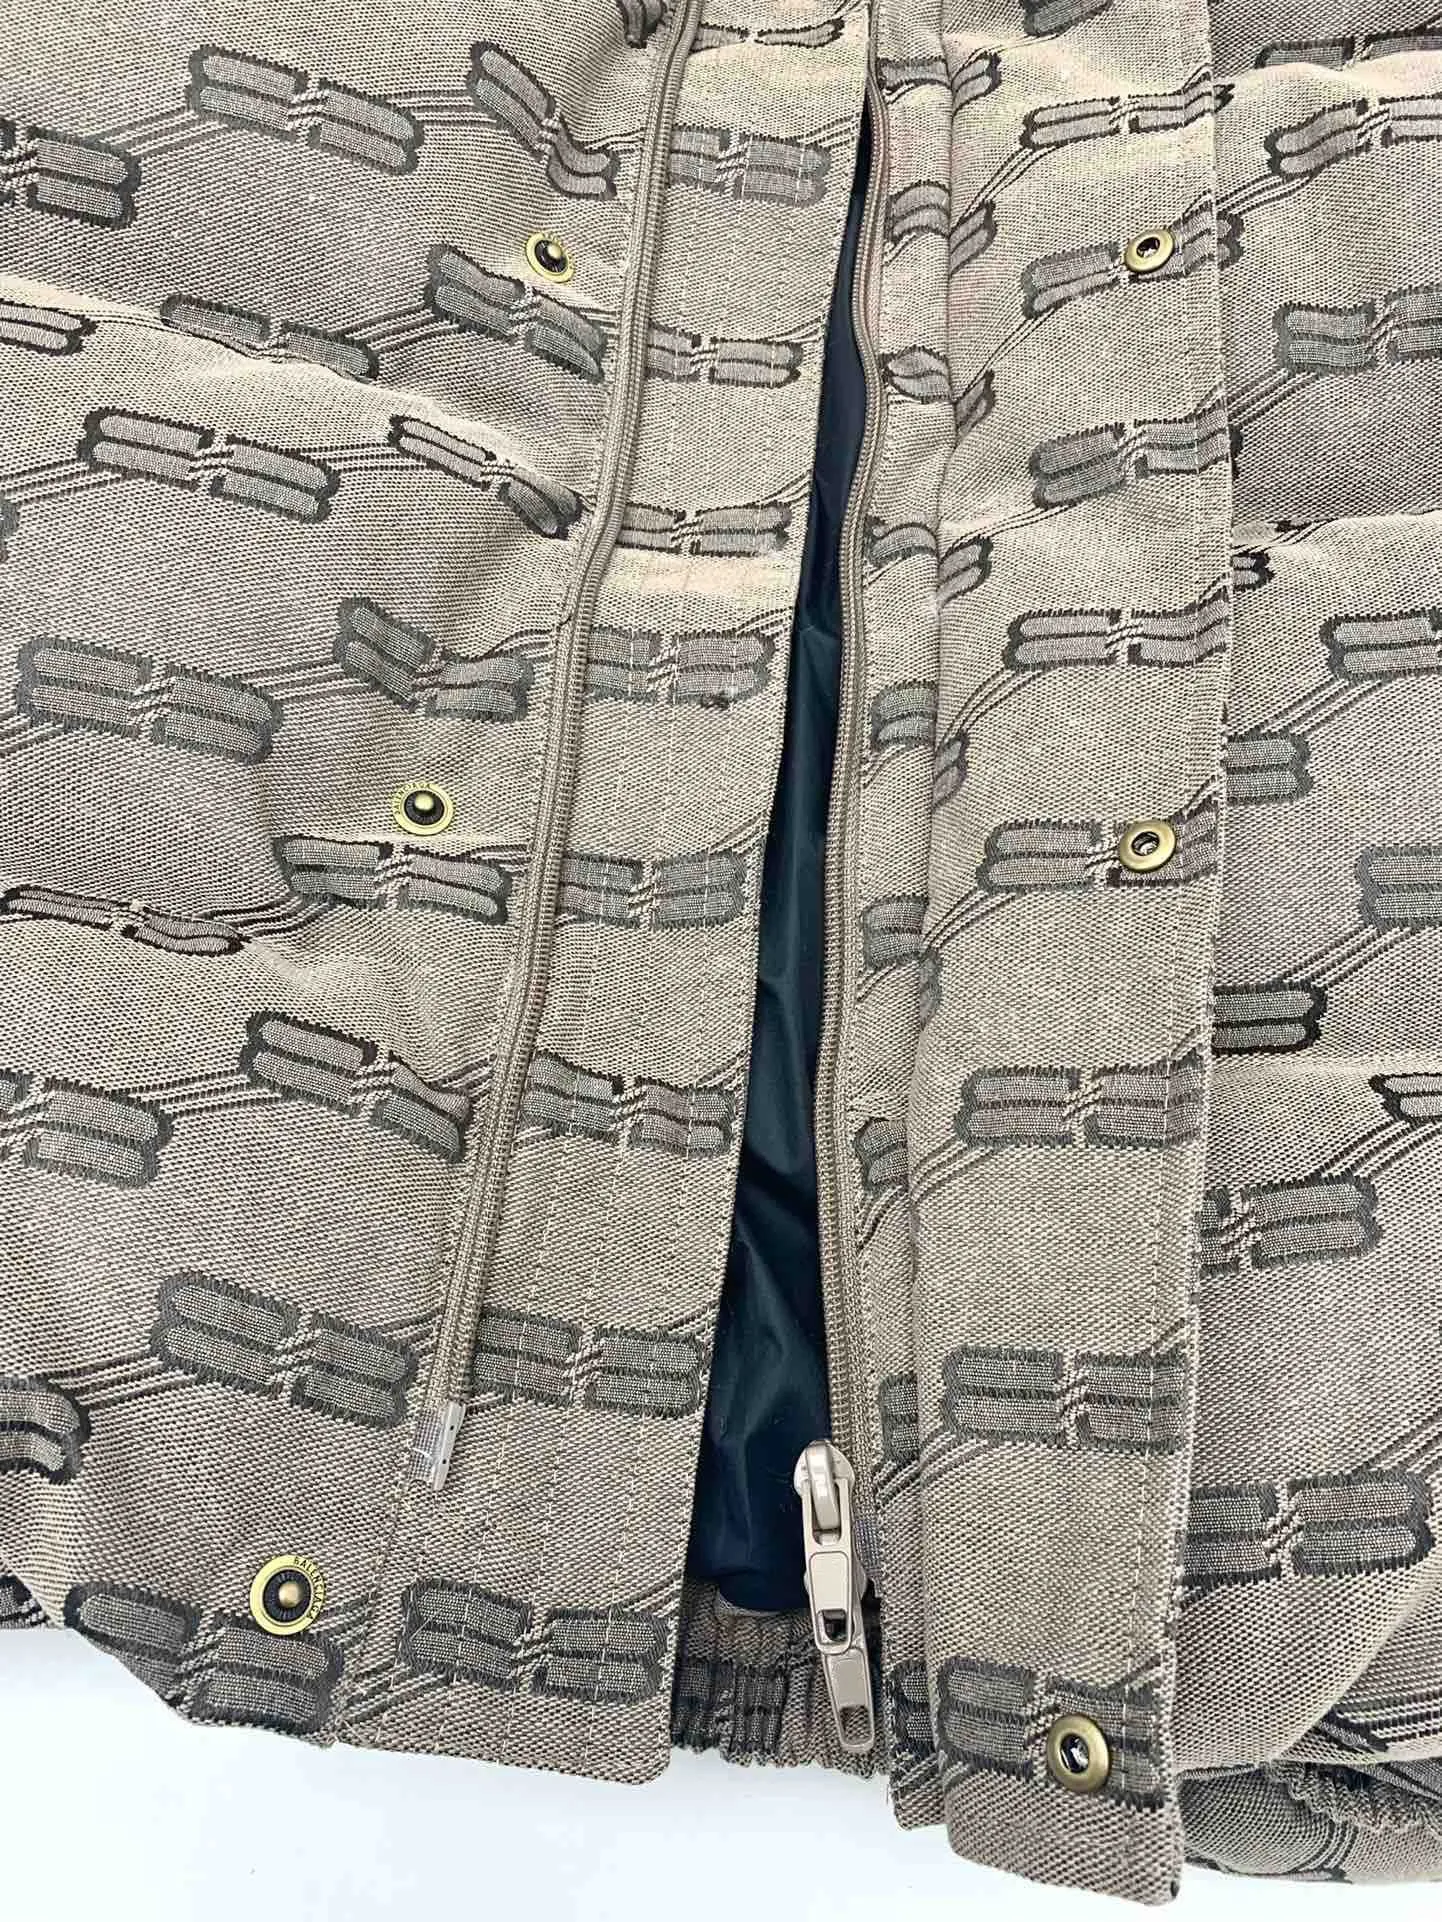 Casaco masculino de outono e inverno com silhueta de cinco grades e mangas compridas, coberto com padrão clássico de duplo b, volume de pilha pesado e alto g, quente e confortável.